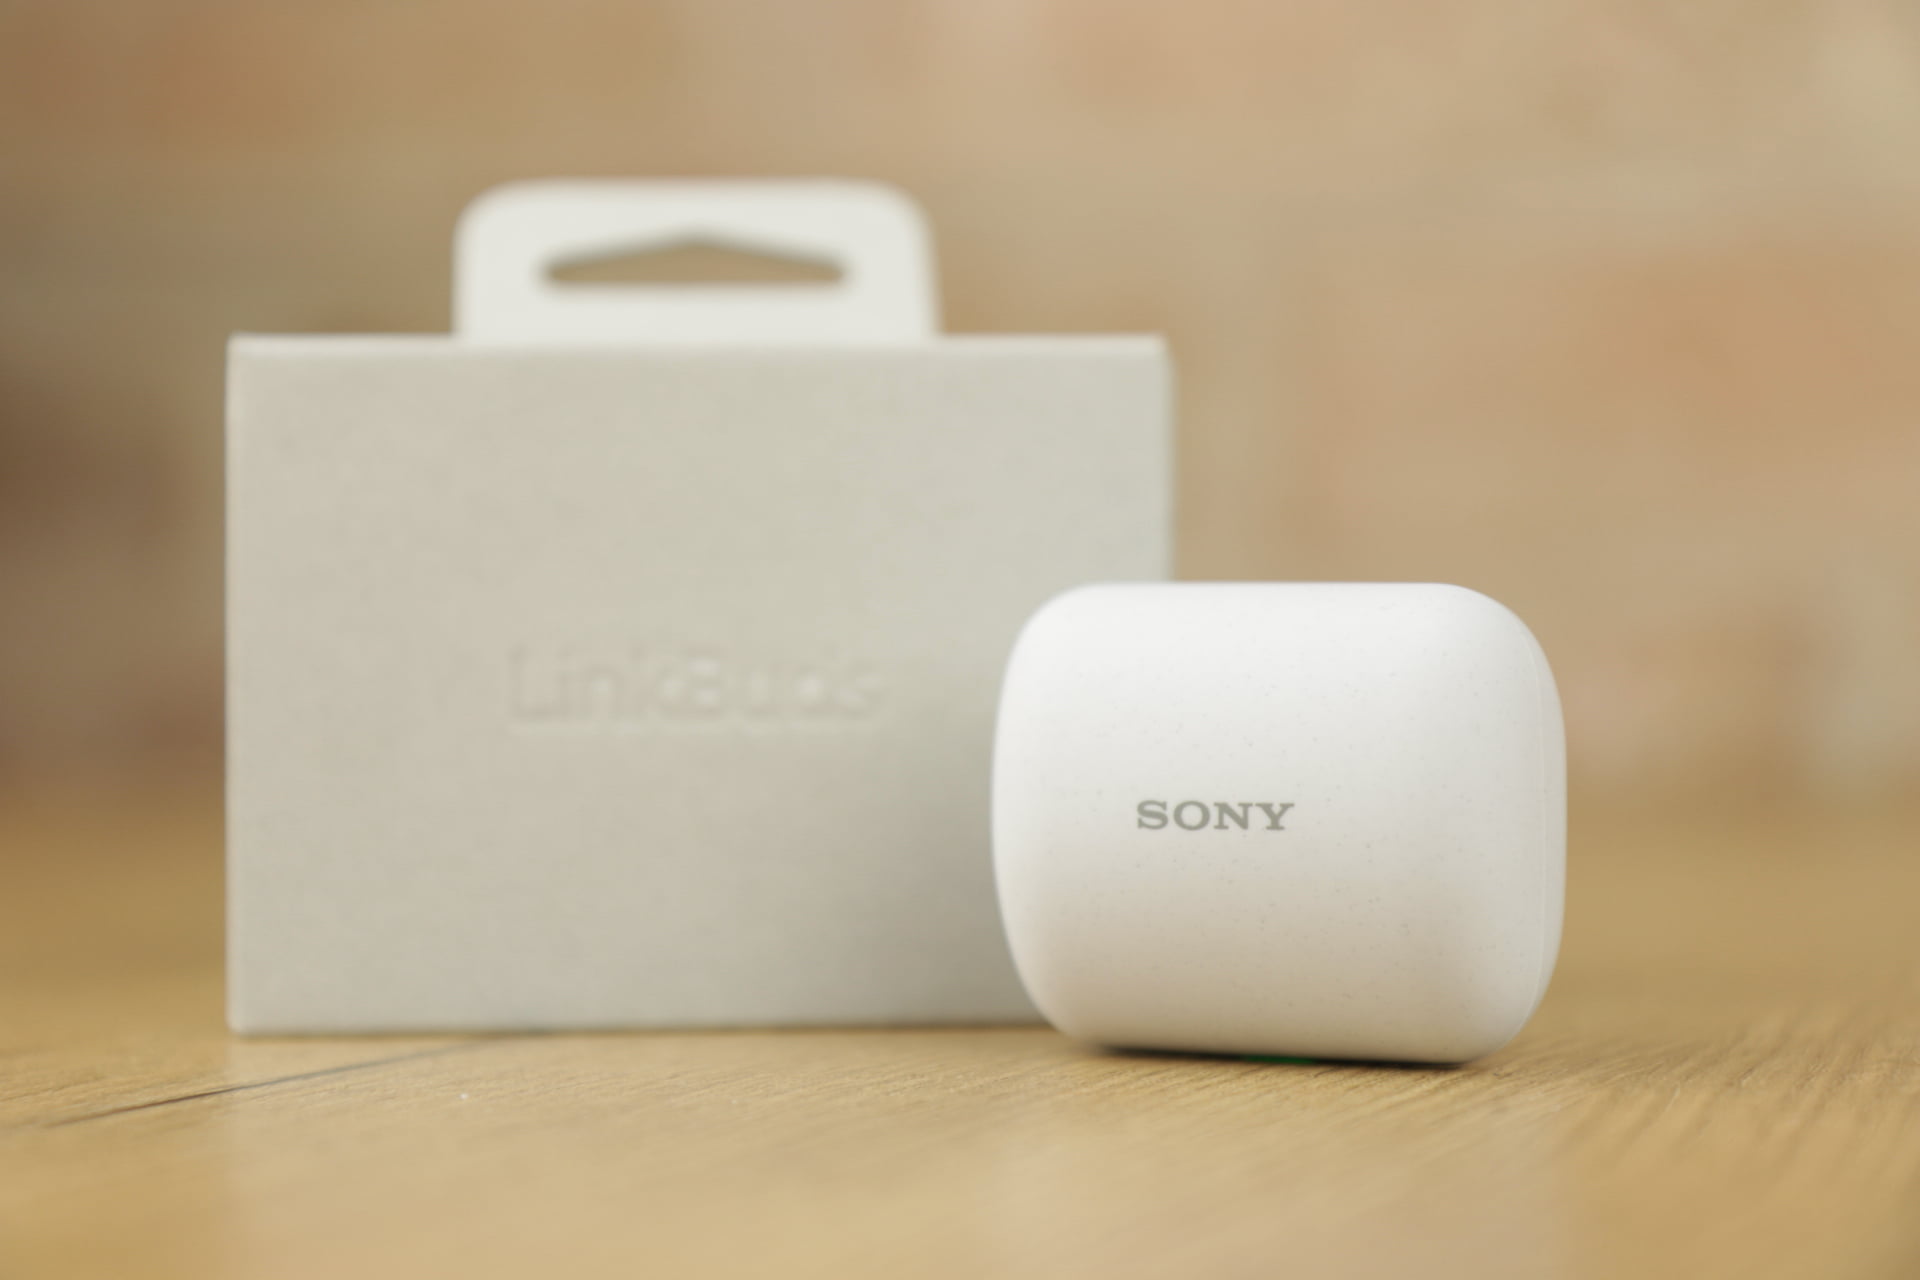 Sony Linkbuds recenzja test opinia 